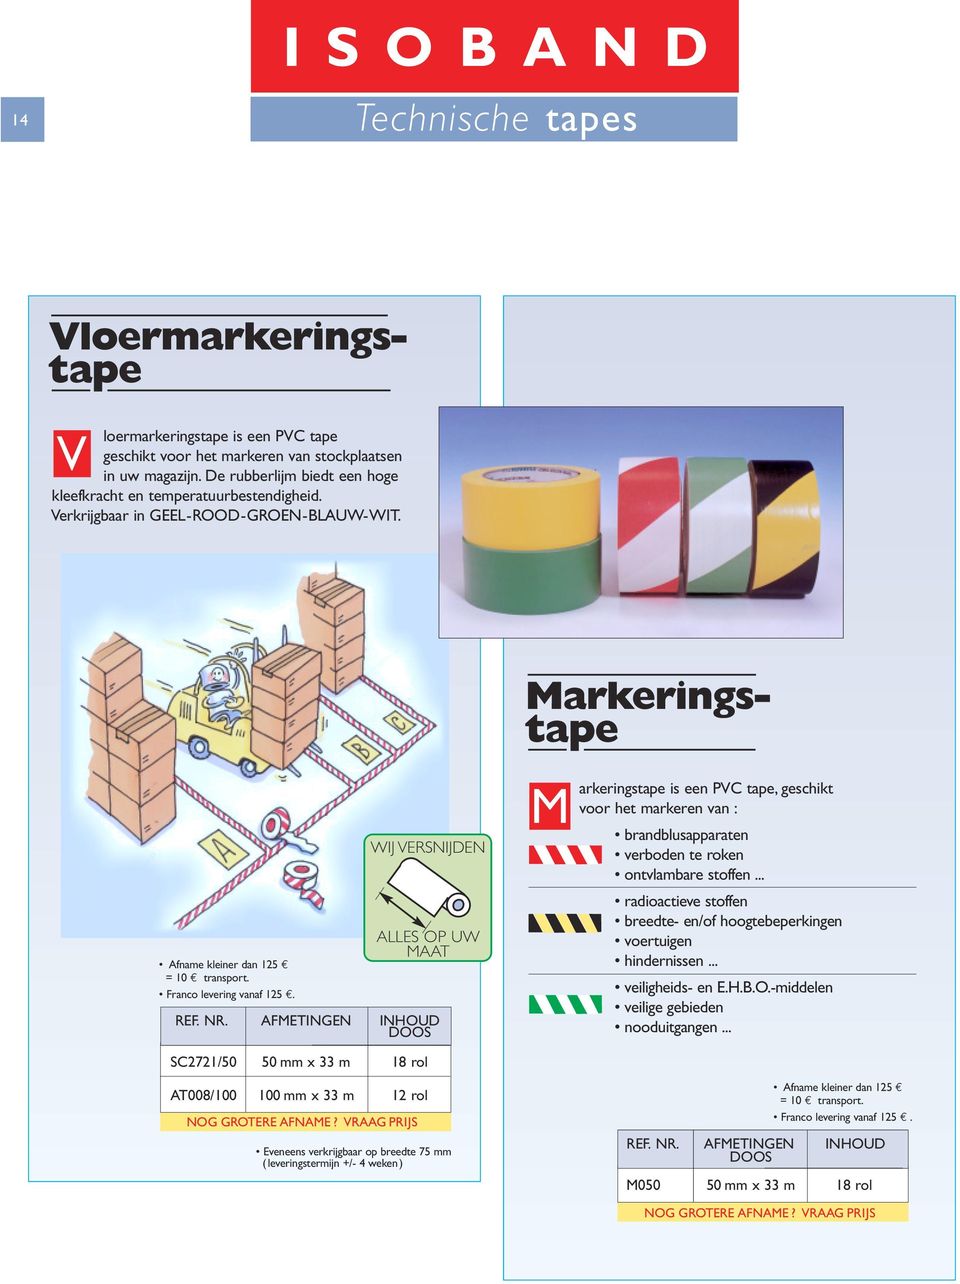 WIJ VERSNIJDEN ALLES OP UW MAAT M arkeringstape is een PVC tape, geschikt voor het markeren van : brandblusapparaten verboden te roken ontvlambare stoffen.